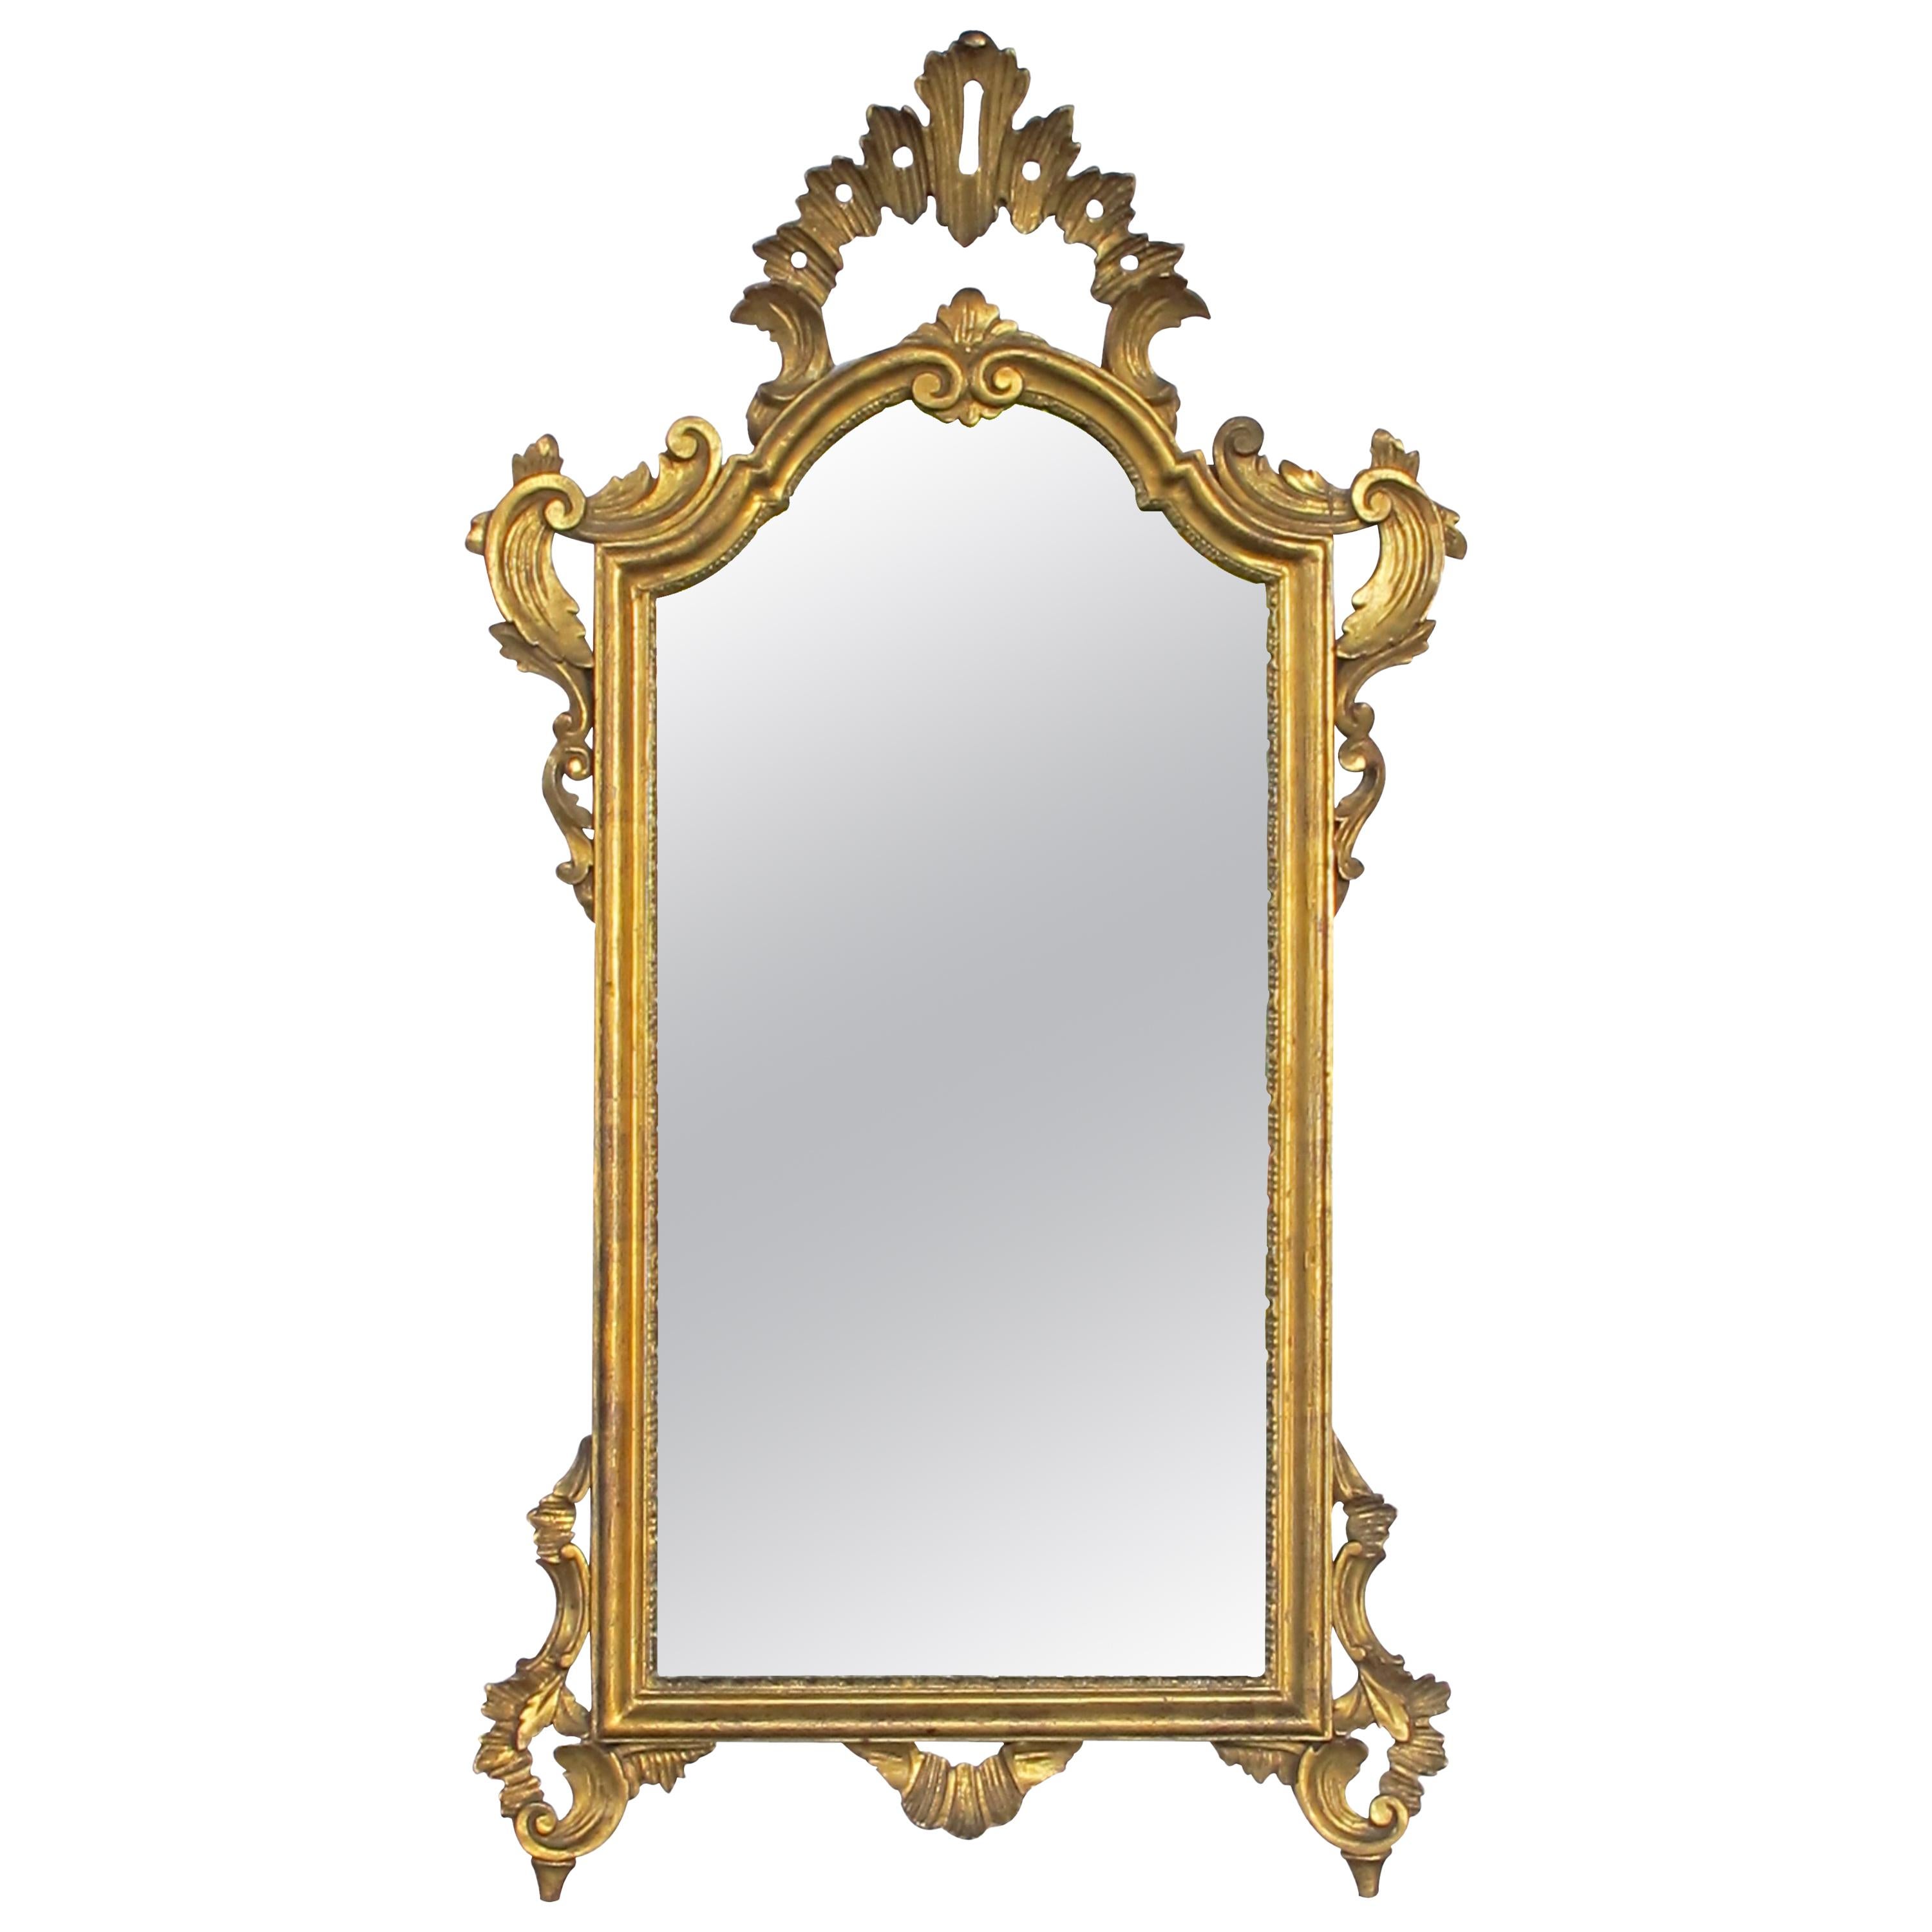 Formschöner italienischer Rokoko-Spiegel aus geschnitztem vergoldetem Holz mit durchbrochenem Rocaille-Wappen